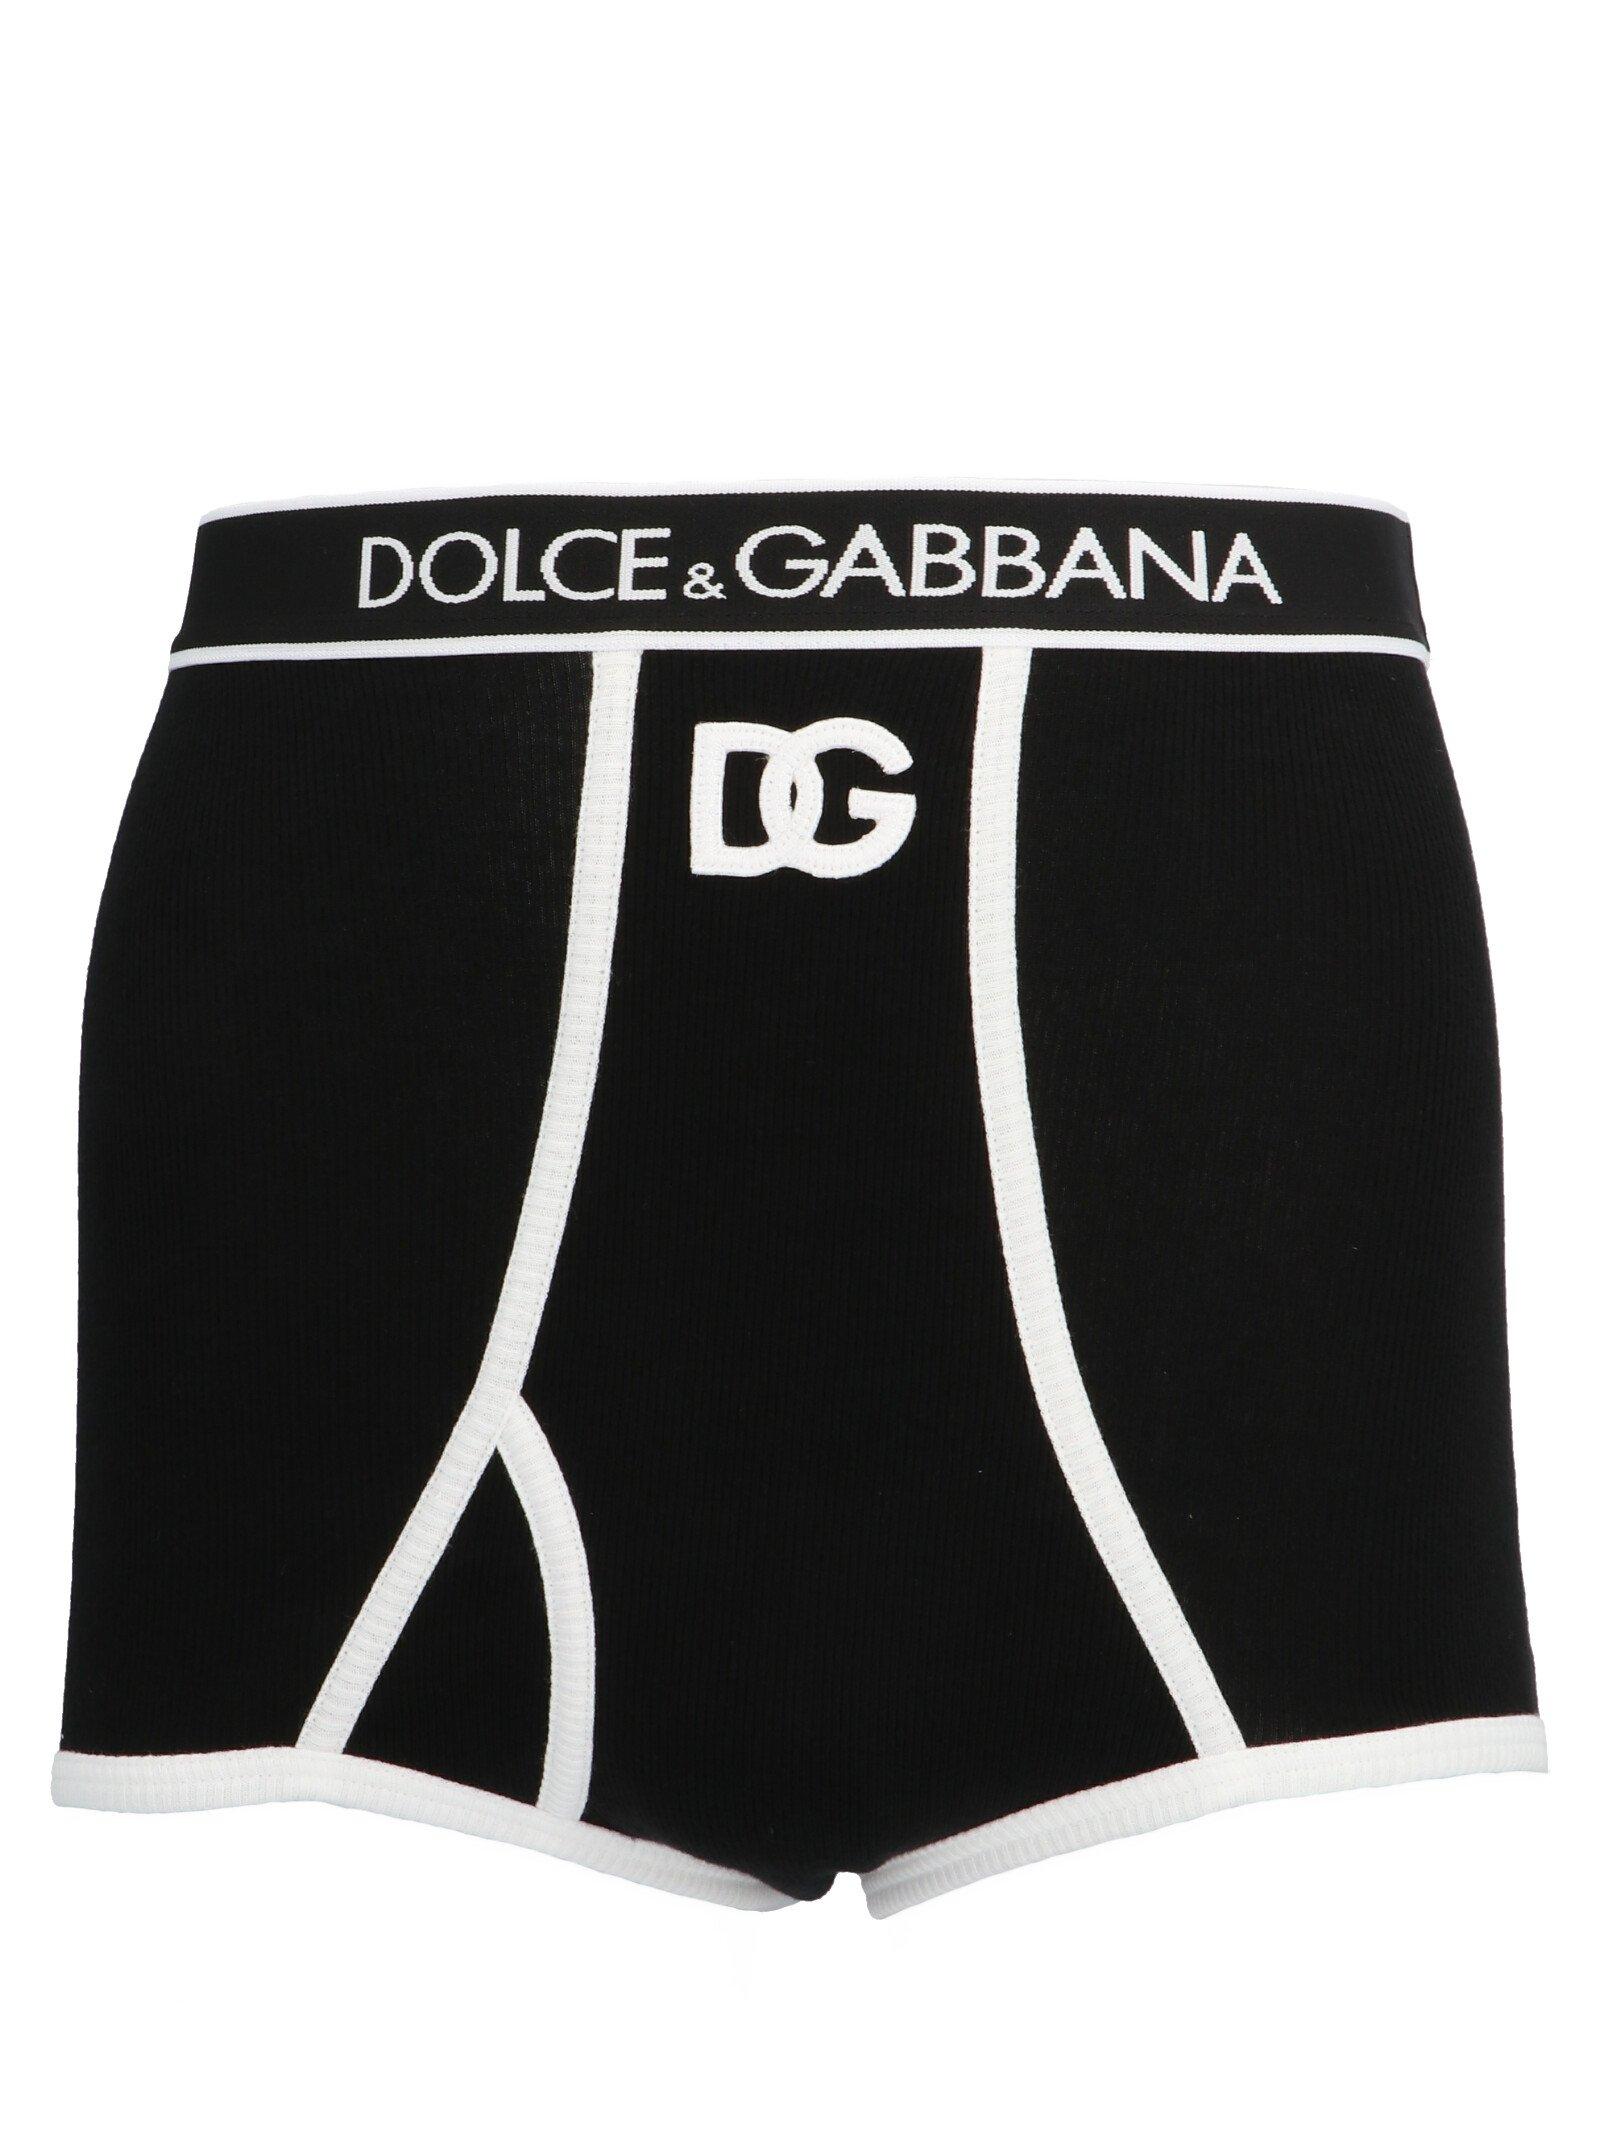 Dolce & Gabbana Cotton Dg High-waisted Briefs in Black - Lyst